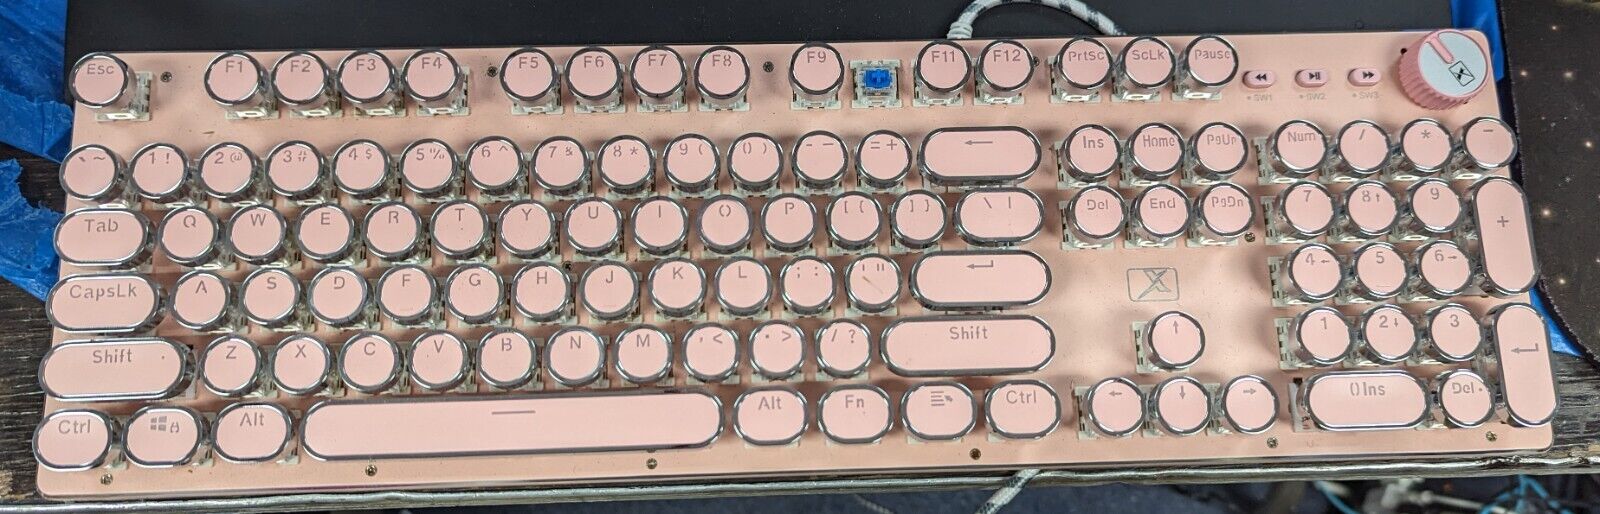 104 Key Mechanical Keyboard Round Steampunk Typewriter Pink - Replacement Keys